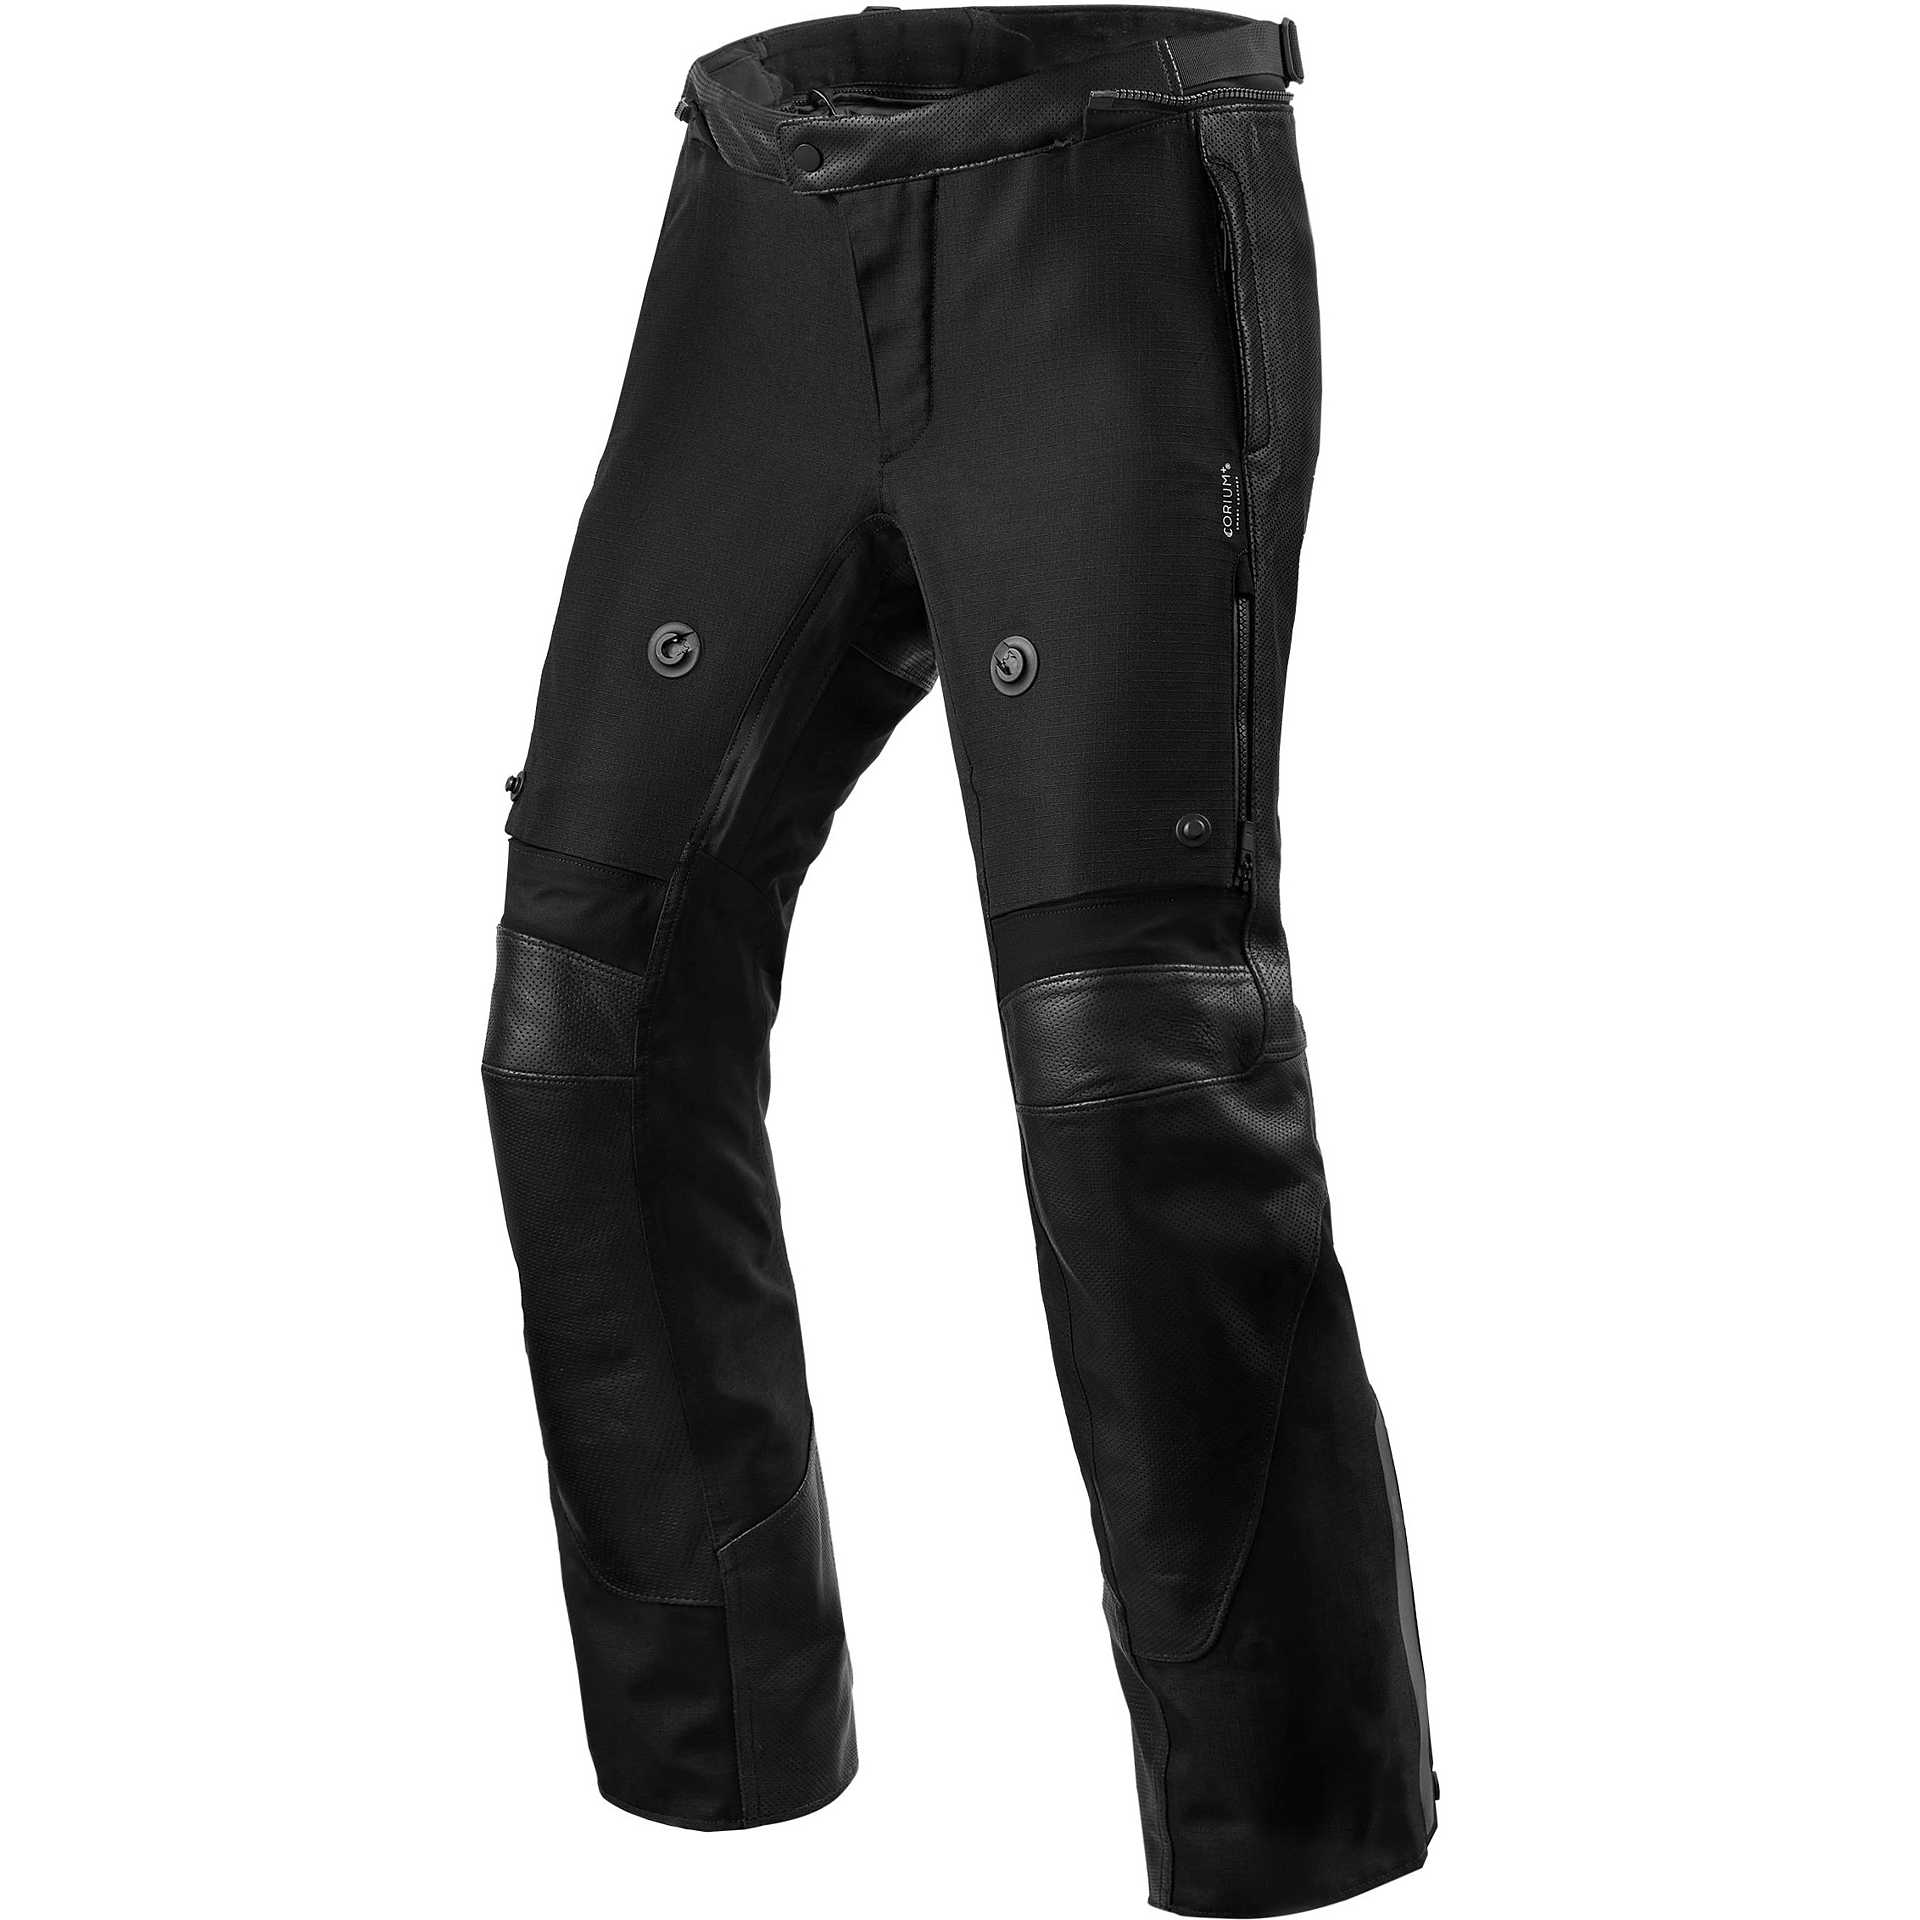 Rev'it VALVE H2O Leather Pants Black Standard For Sale Online 